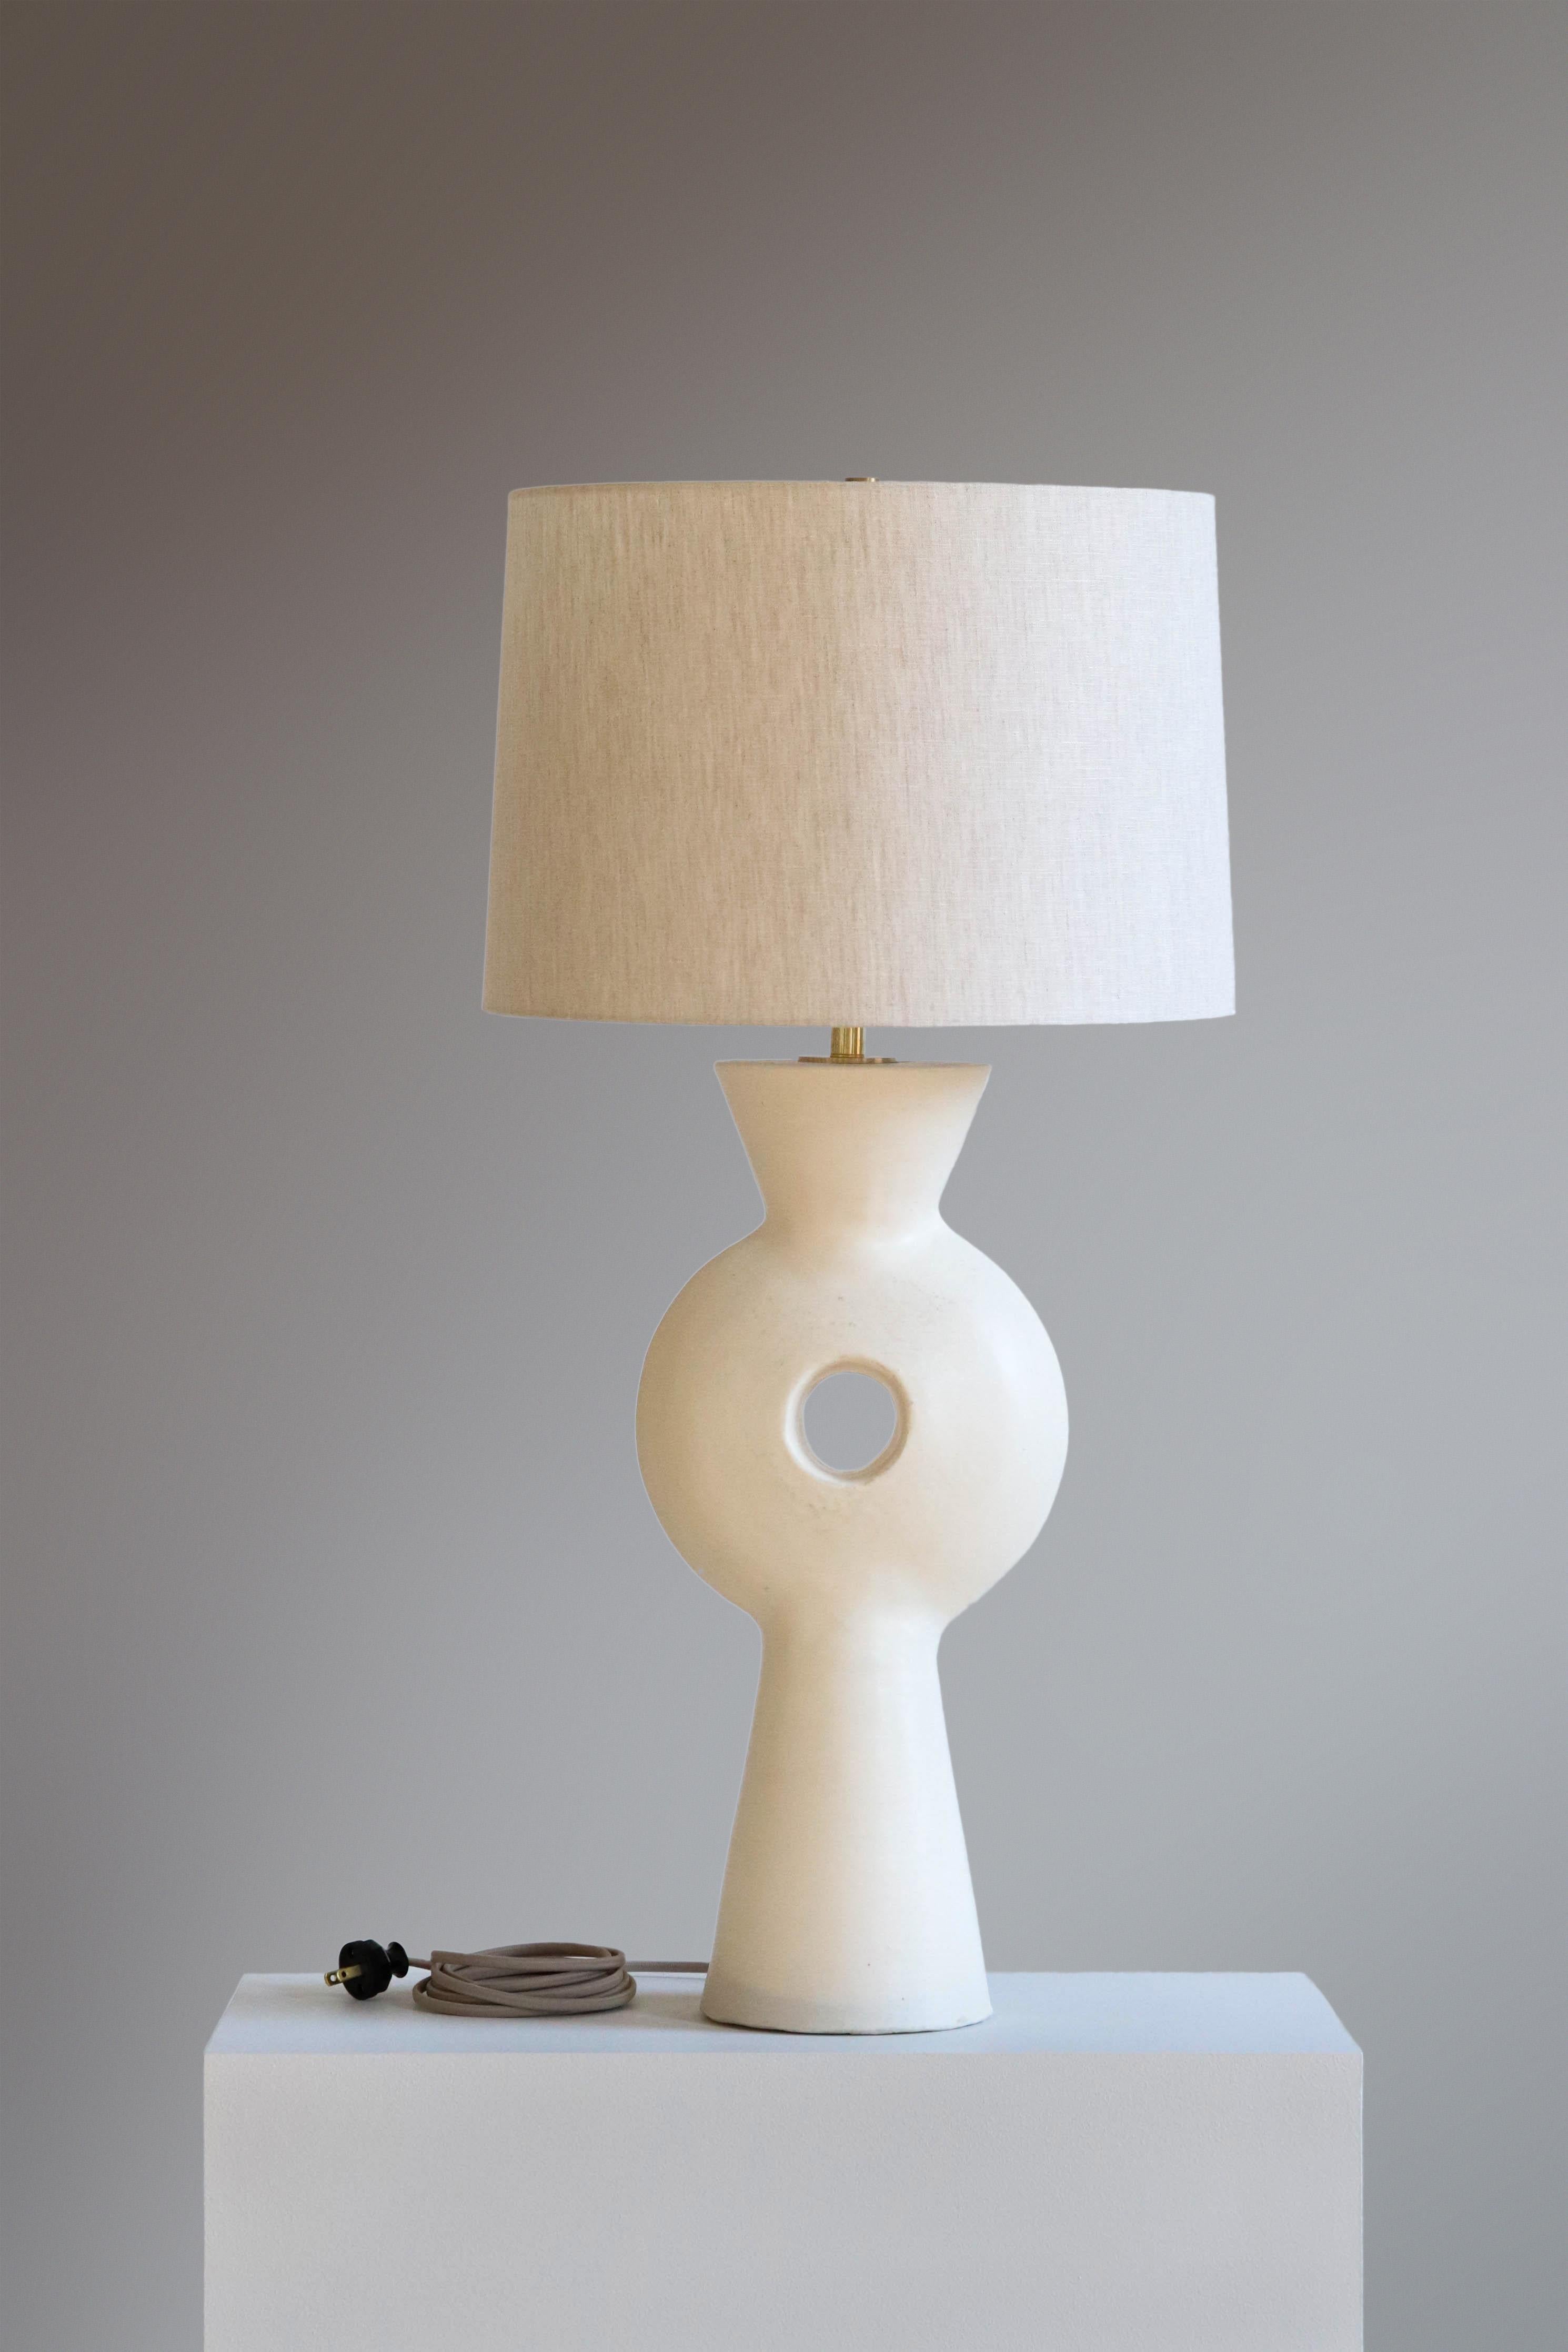 Weiße Linus Tischlampe von Danny Kaplan Studio
Abmessungen: ⌀ 41 x H 82 cm
MATERIALIEN: Keramik glasiert, Messing unbearbeitet, Leinen

Dieser Artikel ist handgefertigt und kann innerhalb desselben Stücks Abweichungen aufweisen. Wir tun unser